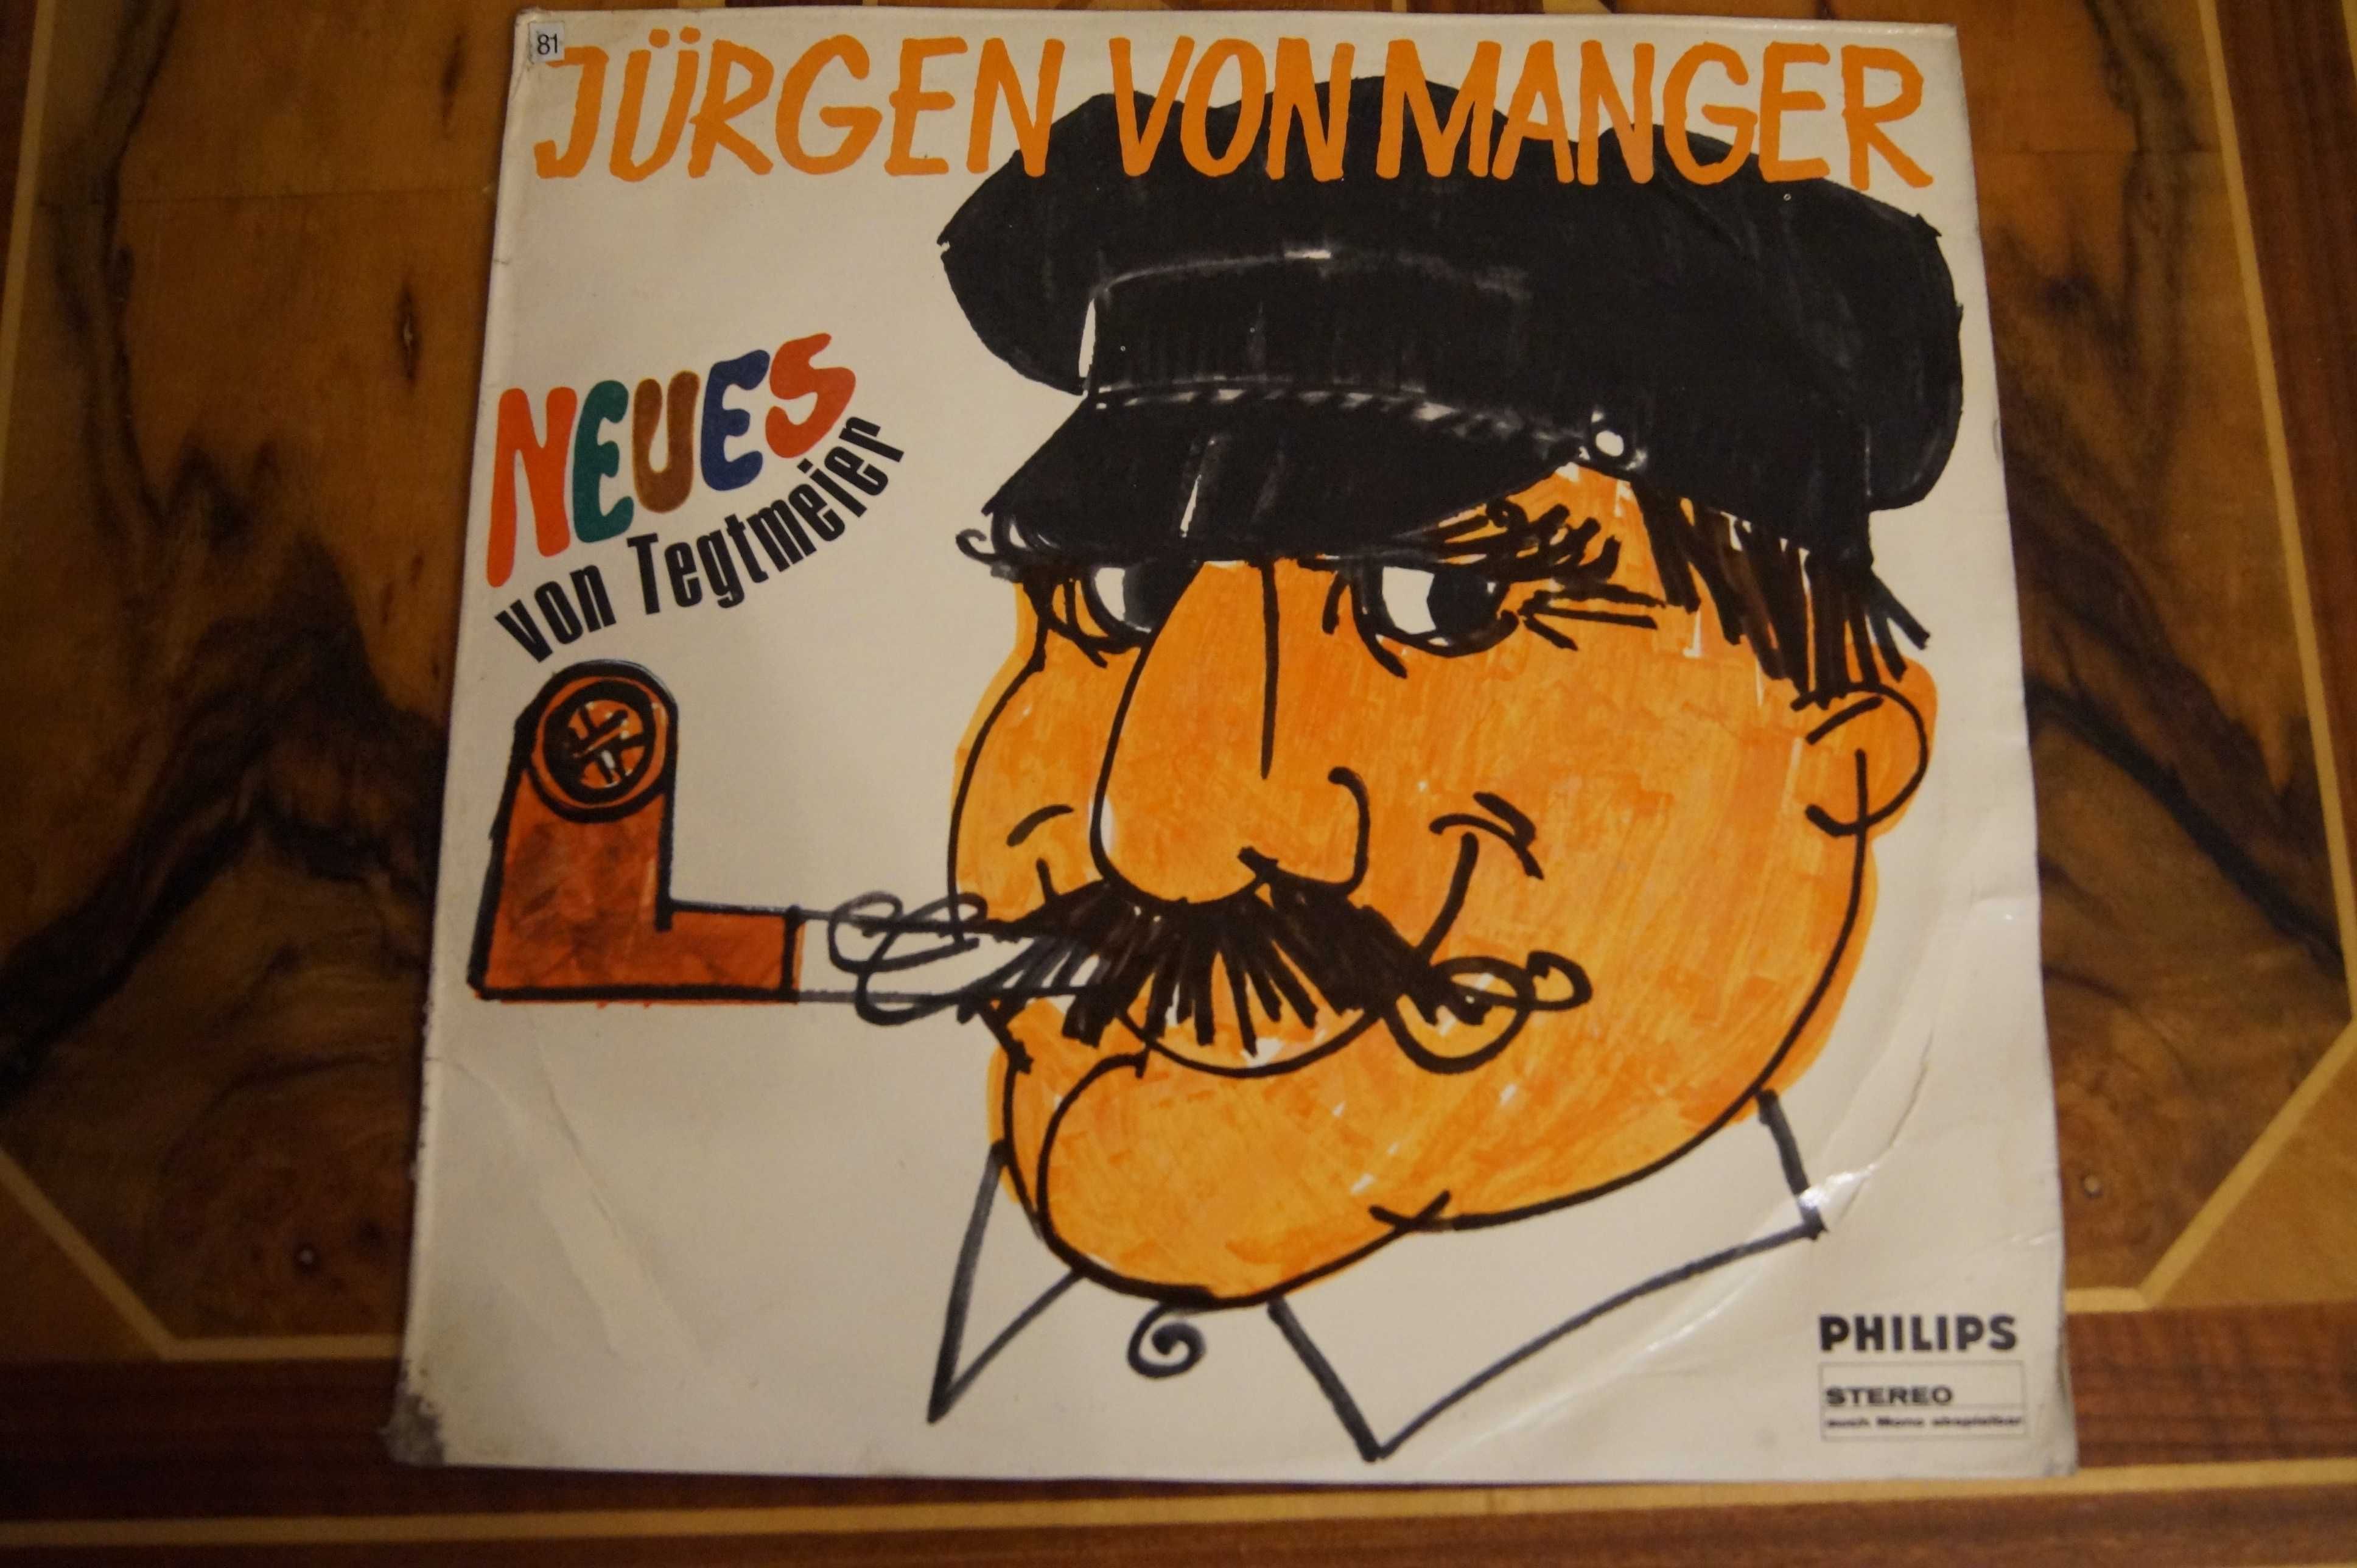 Jurgen von Margen -Neues von Tegtmeier winyl vinyl